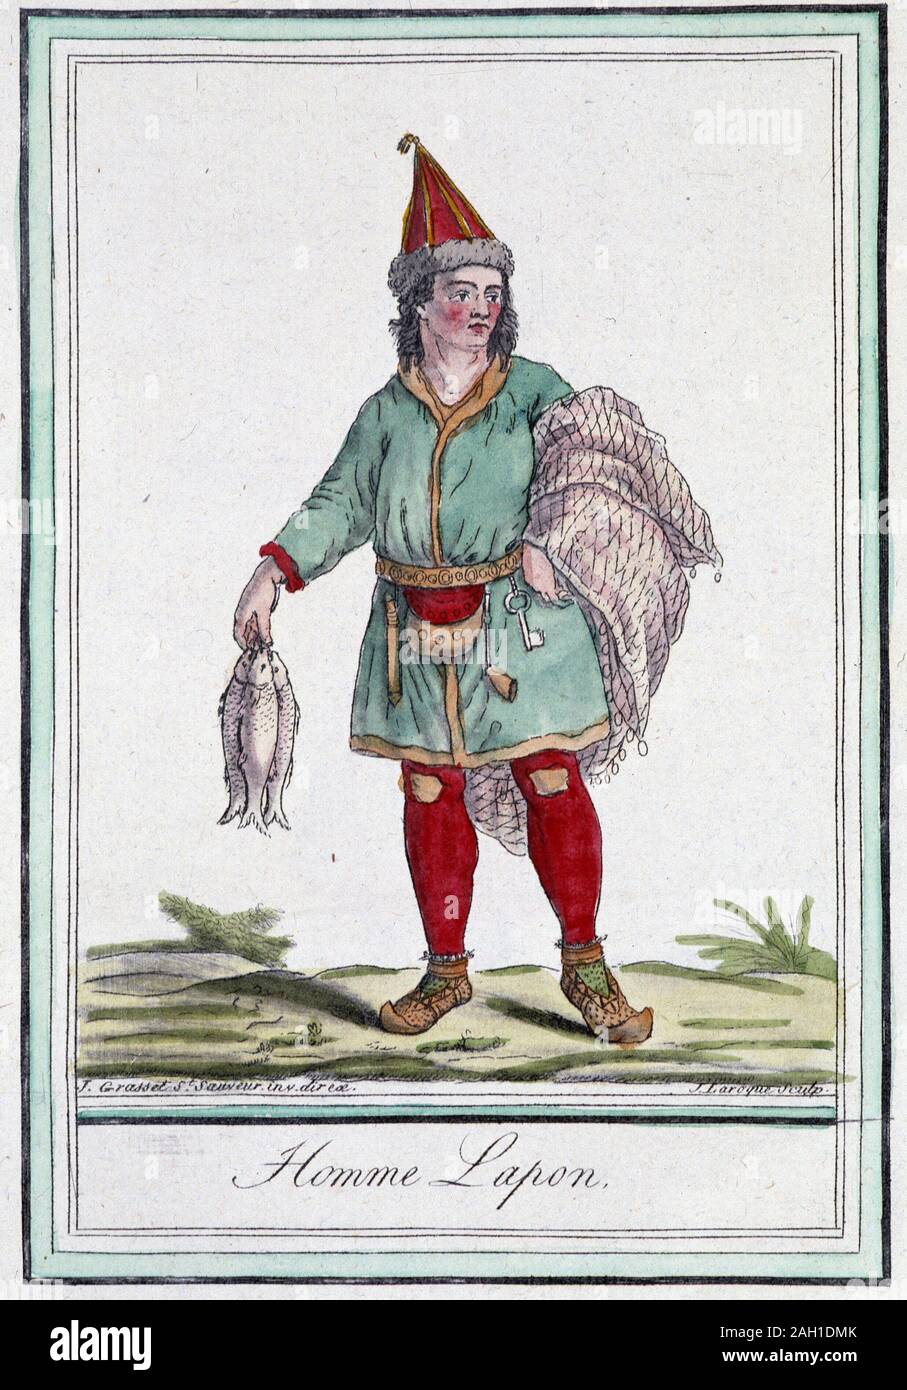 Homme lapon - dans 'Encyclopedie des voyages' par Grasset Saint-sauveur, ed. Paris 1796 Banque D'Images